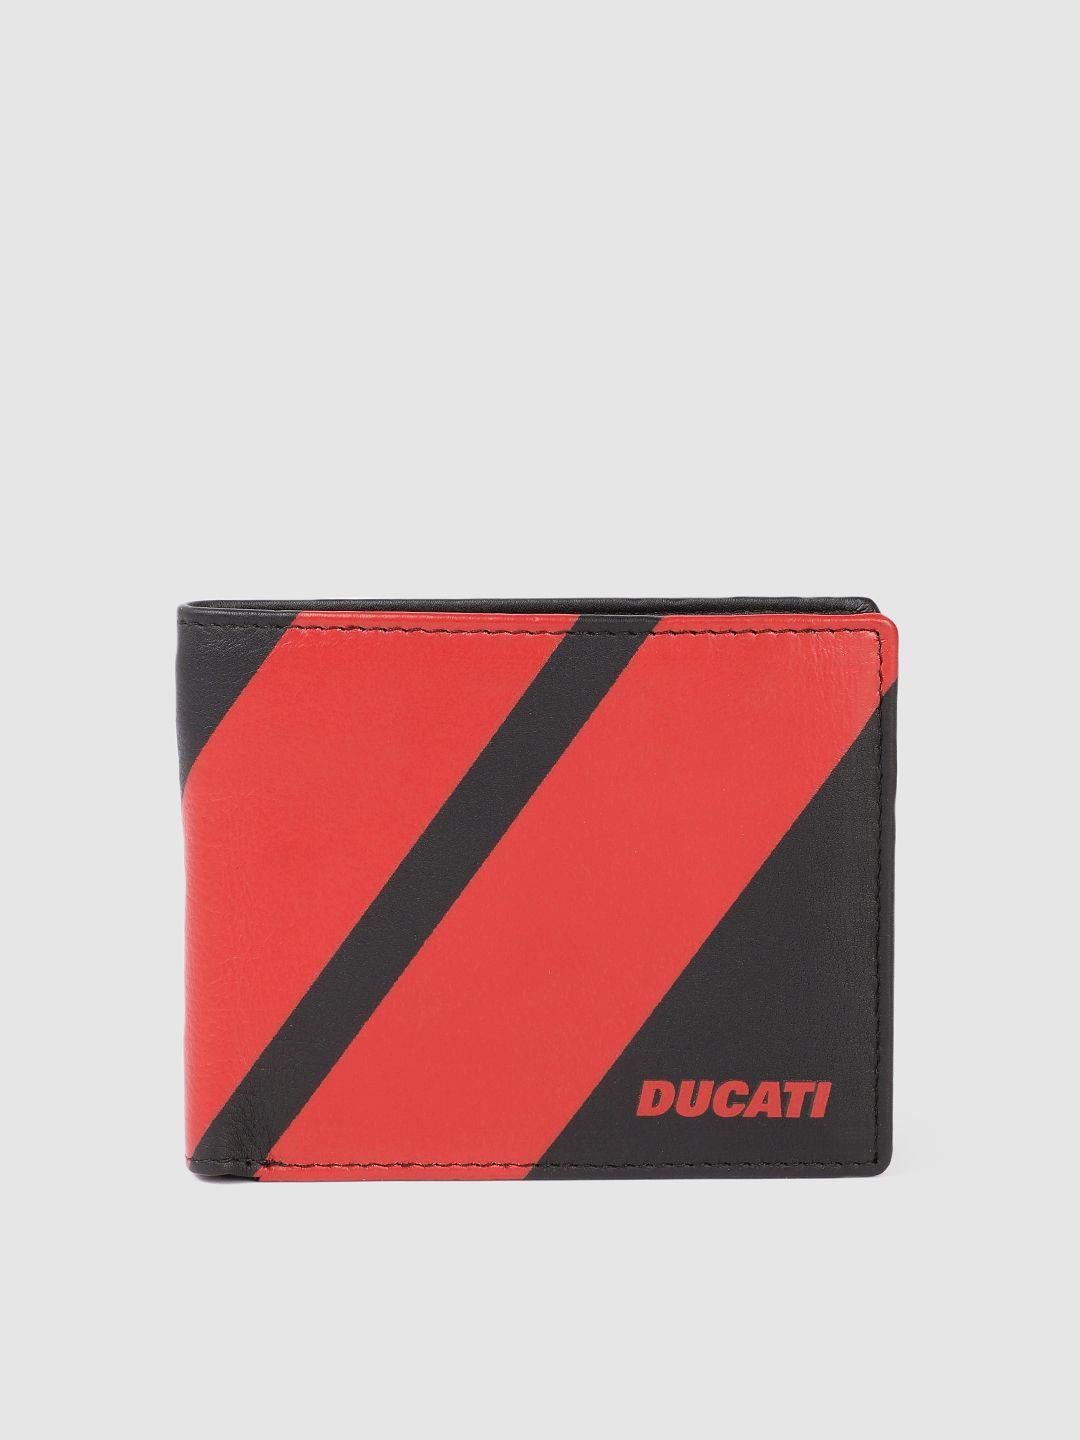 ducati men colourblocked leather two fold wallet